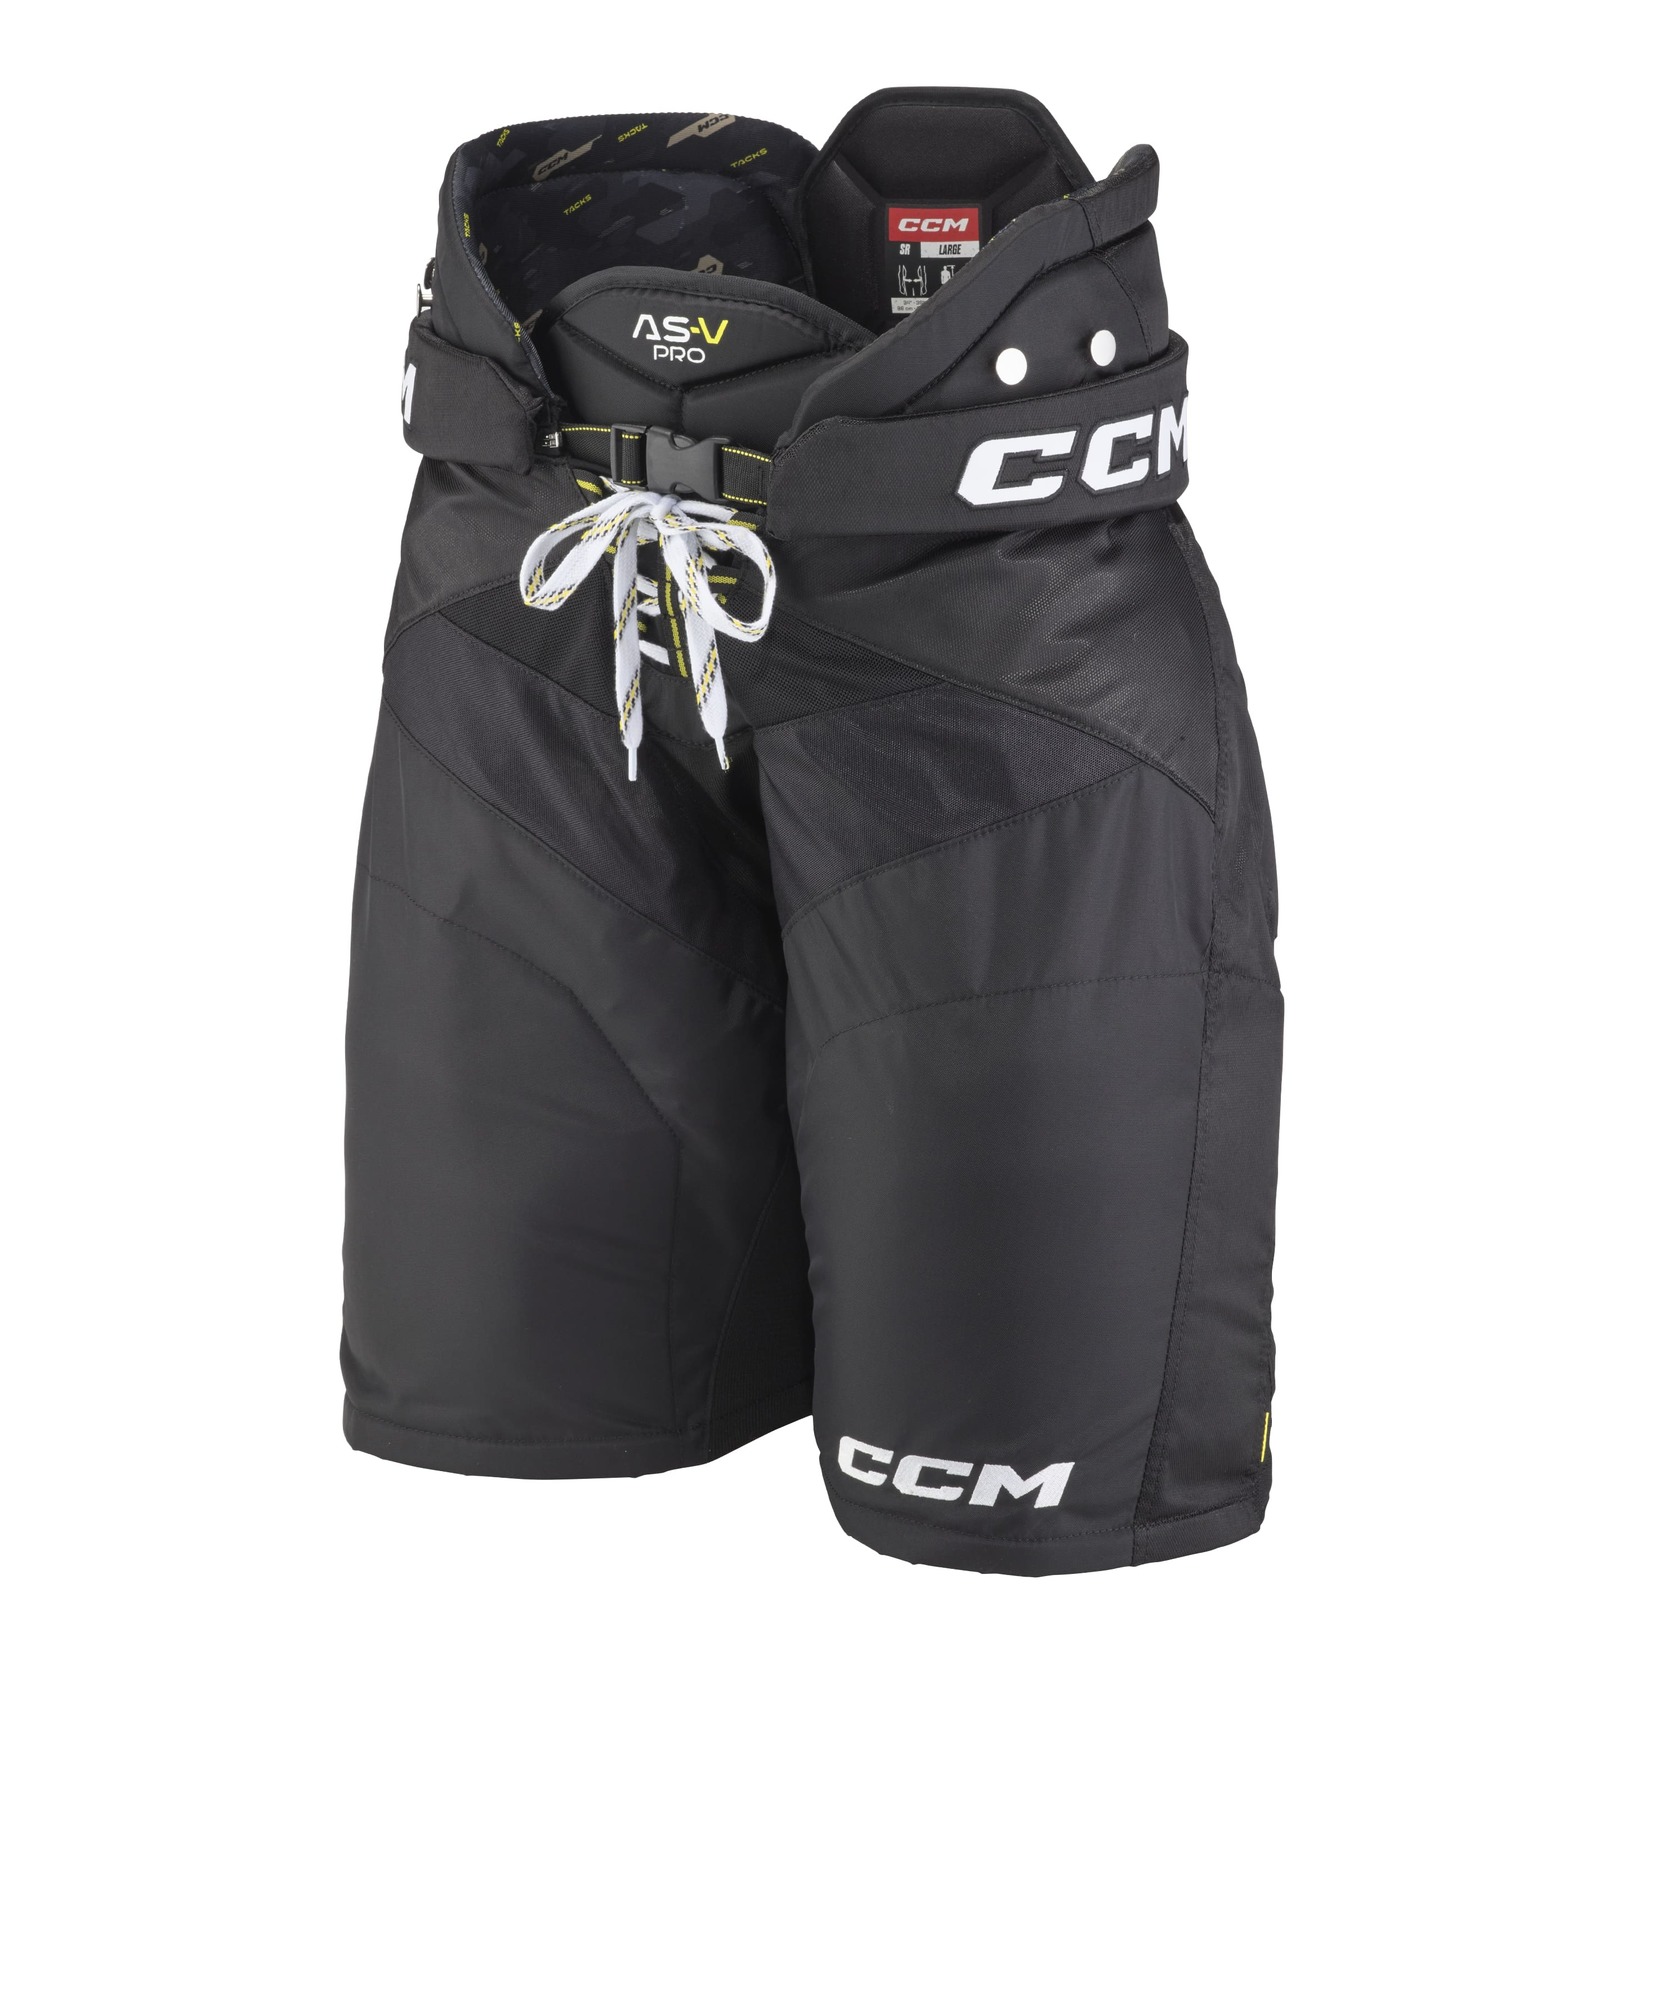 CCM Kalhoty CCM Tacks AS-V Pro SR